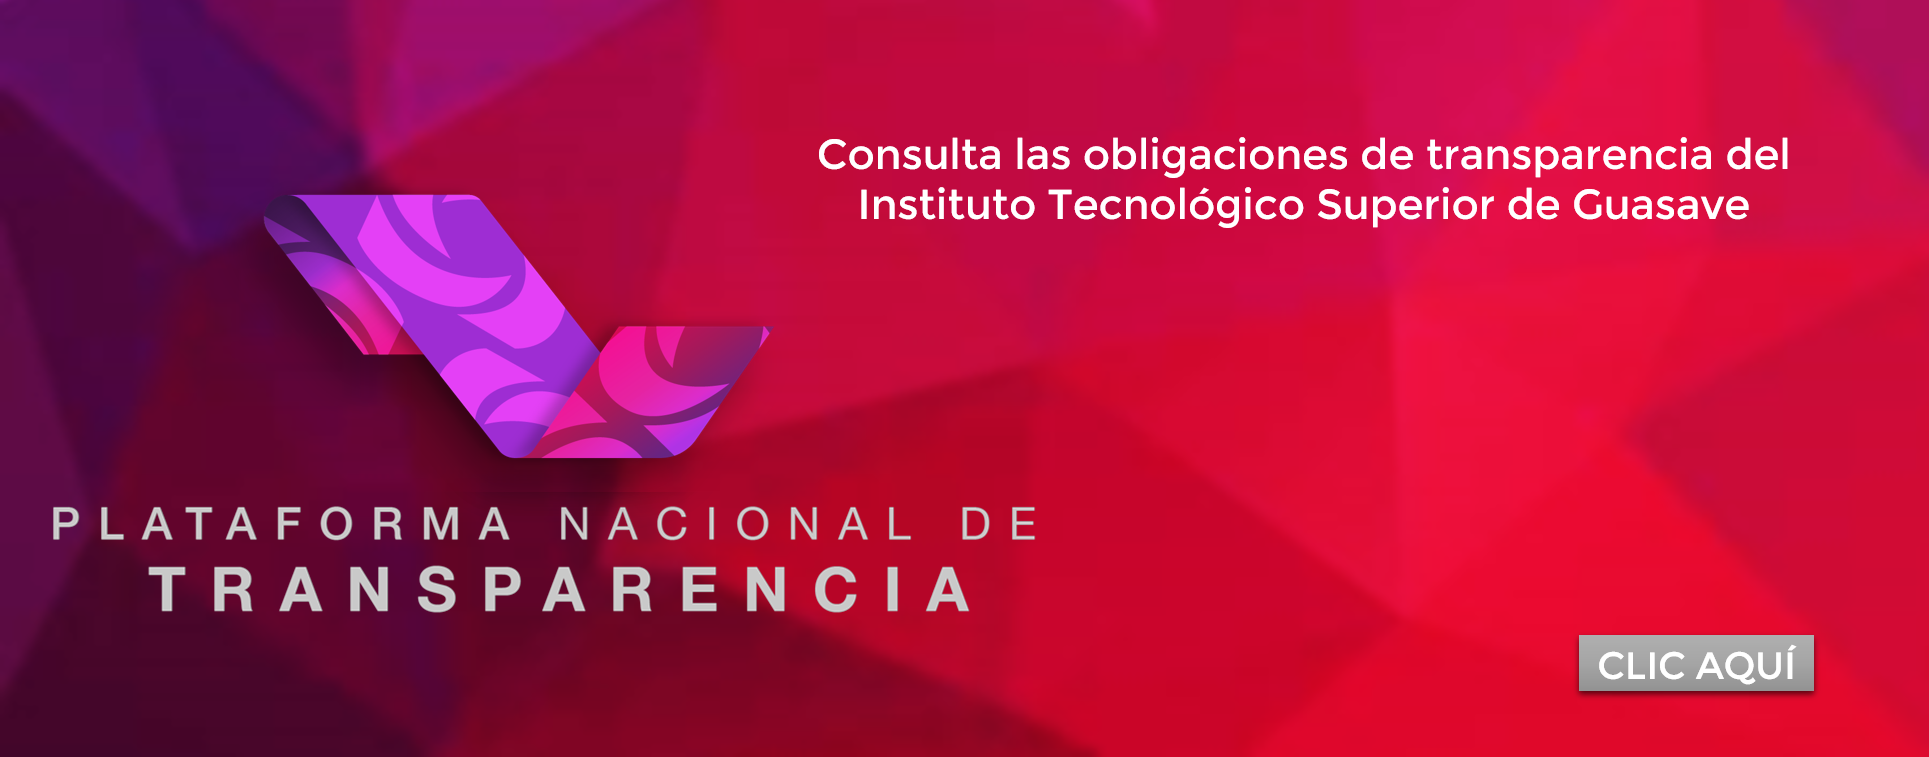 Consulta las obligaciones de transparencia del Instituto Tecnológico Superior de Guasave (ITSG)